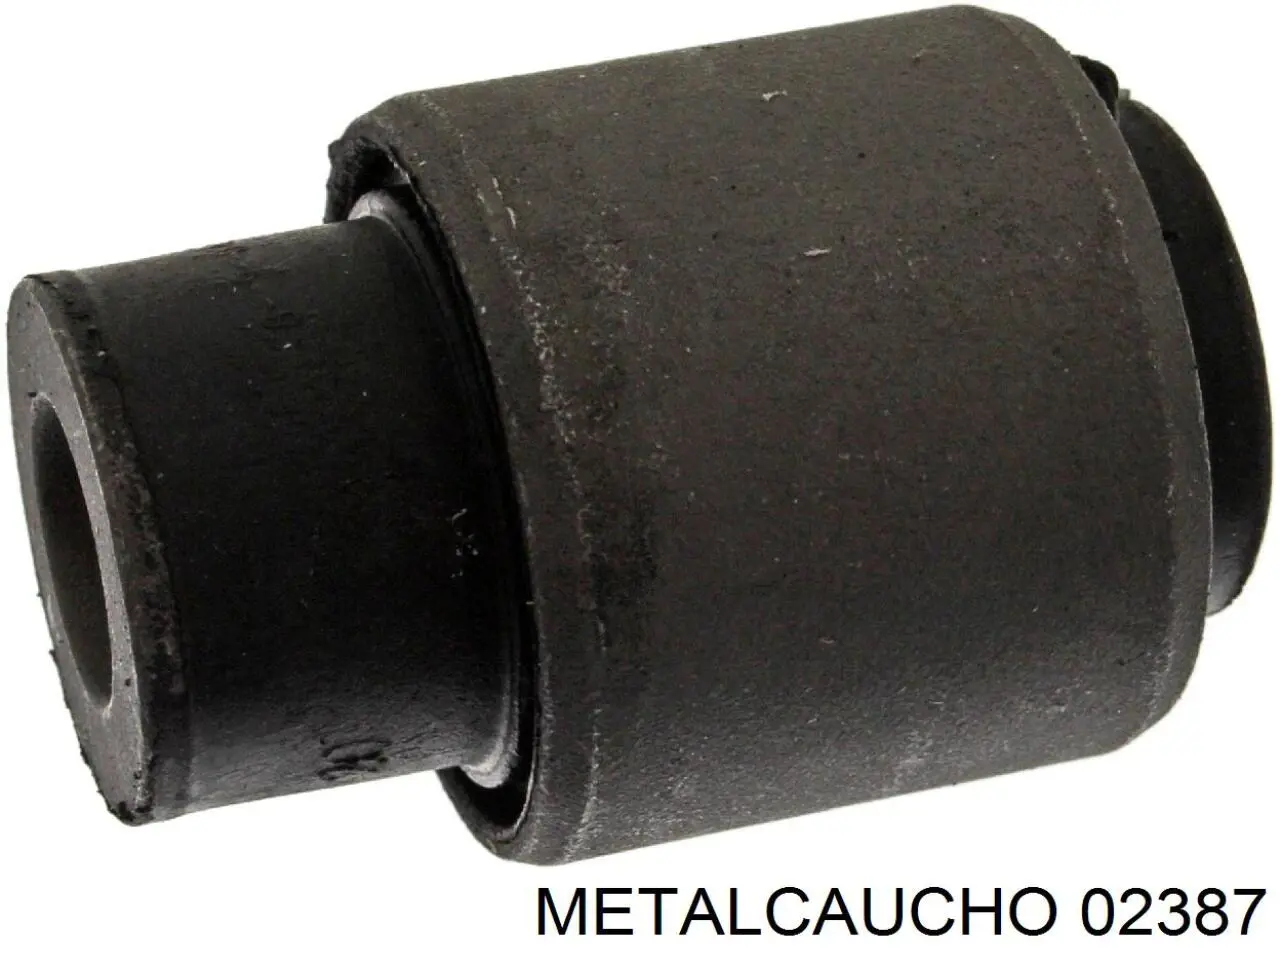 02387 Metalcaucho silentblock de suspensión delantero inferior